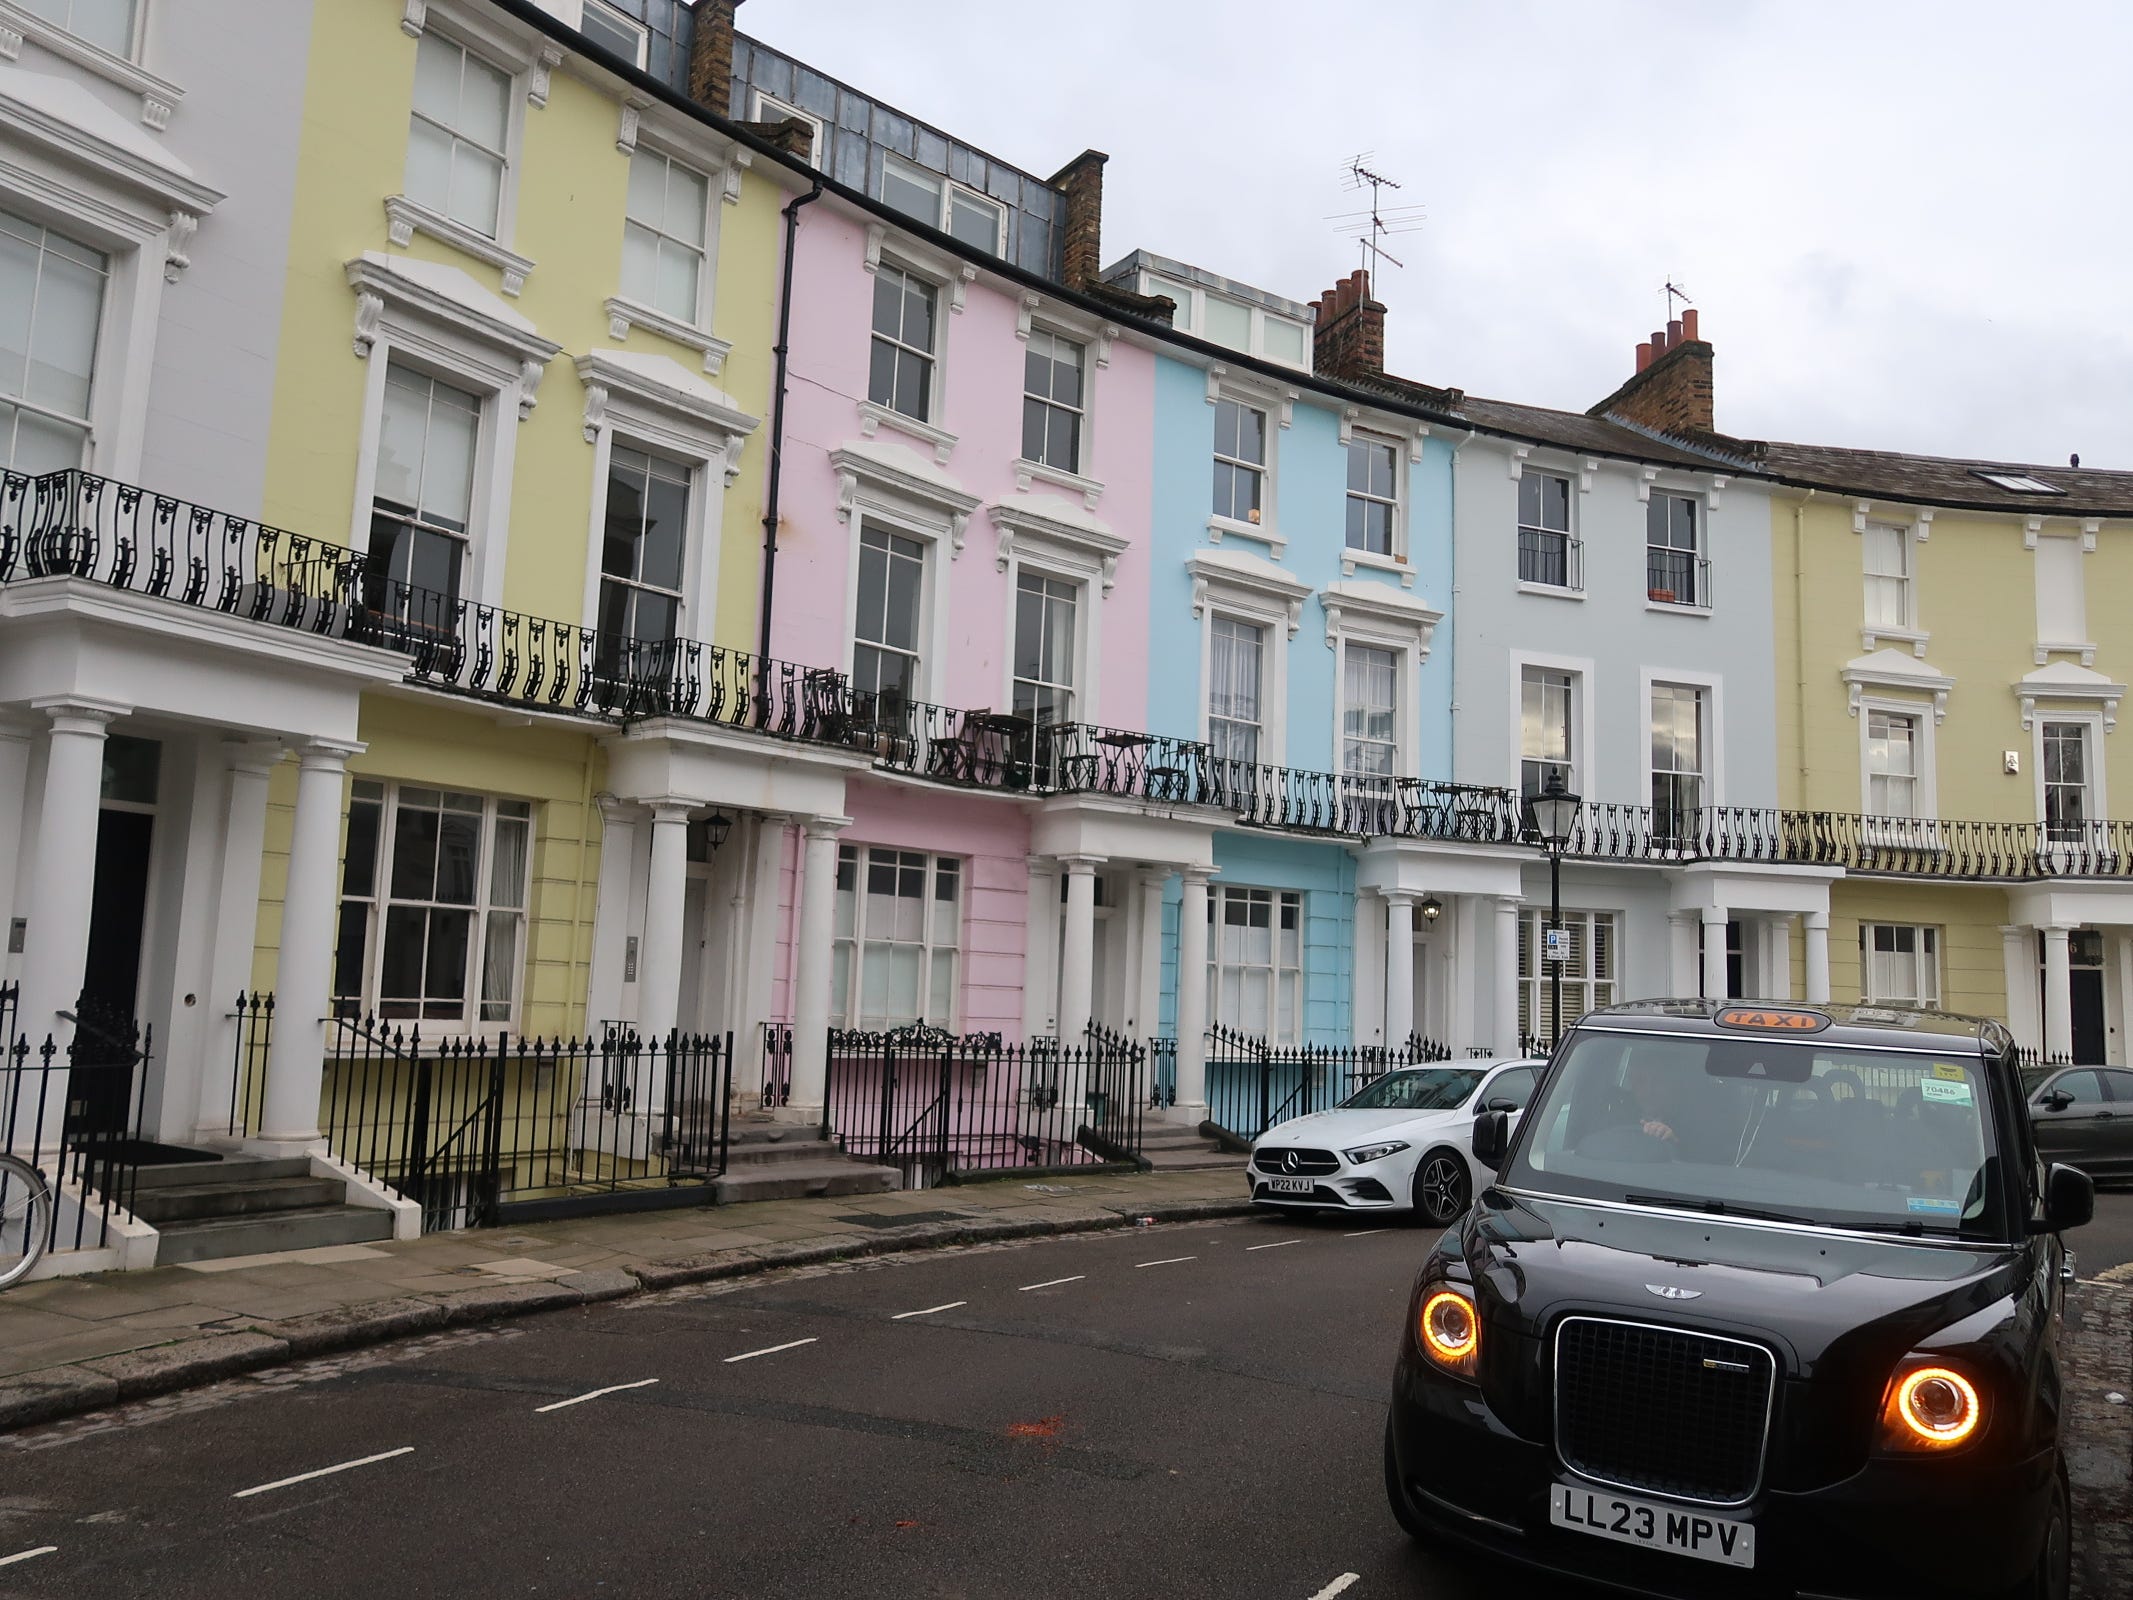 Bunte Häuser entlang einer Straße in Camden Town in London